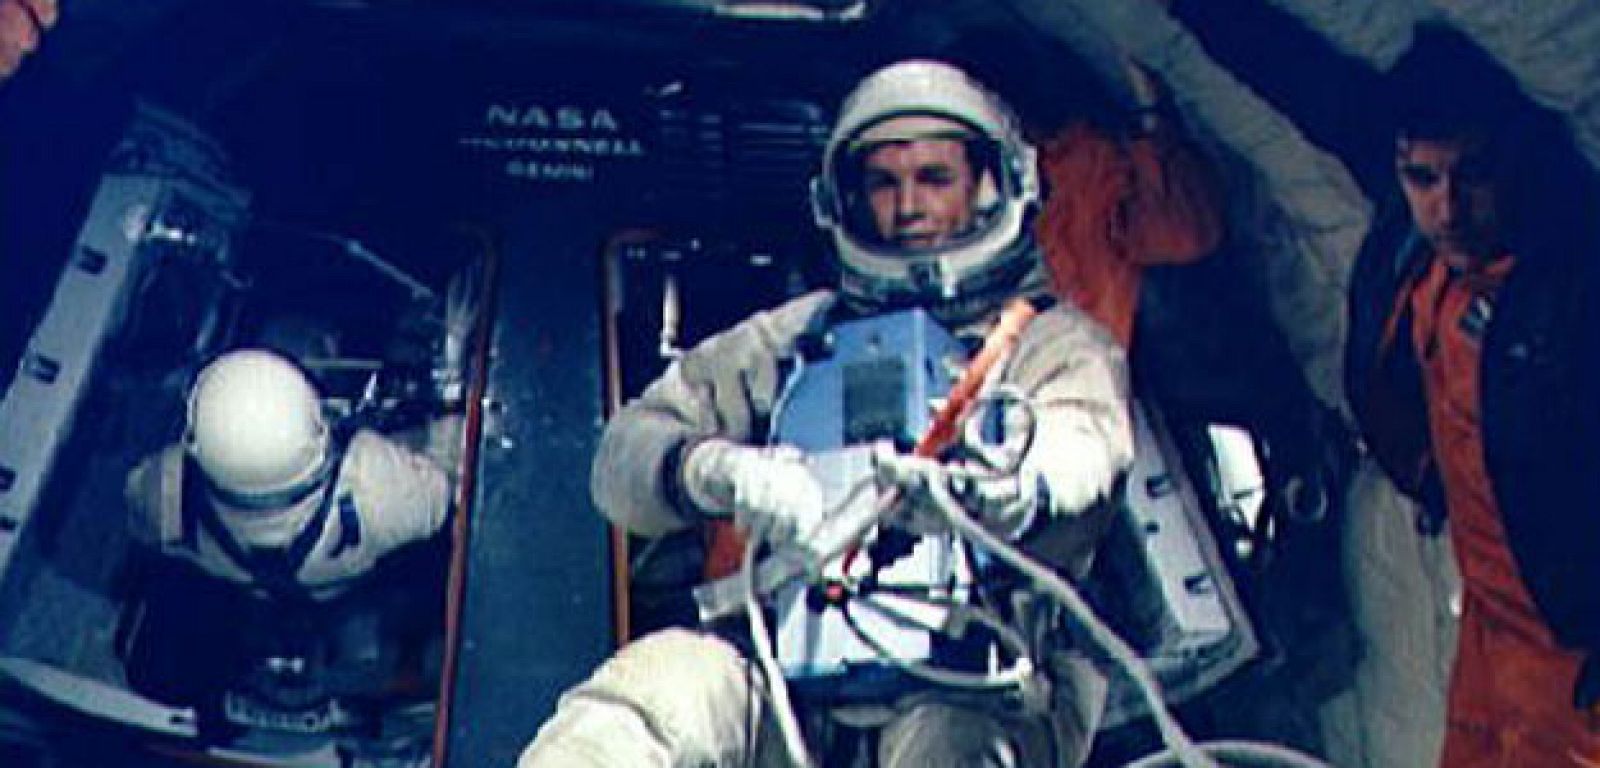 David Scott, suspendido en un estado ingrávido con el traje espacialdurante la actividad extravehicular. en la misión Apolo 12 de 1969.